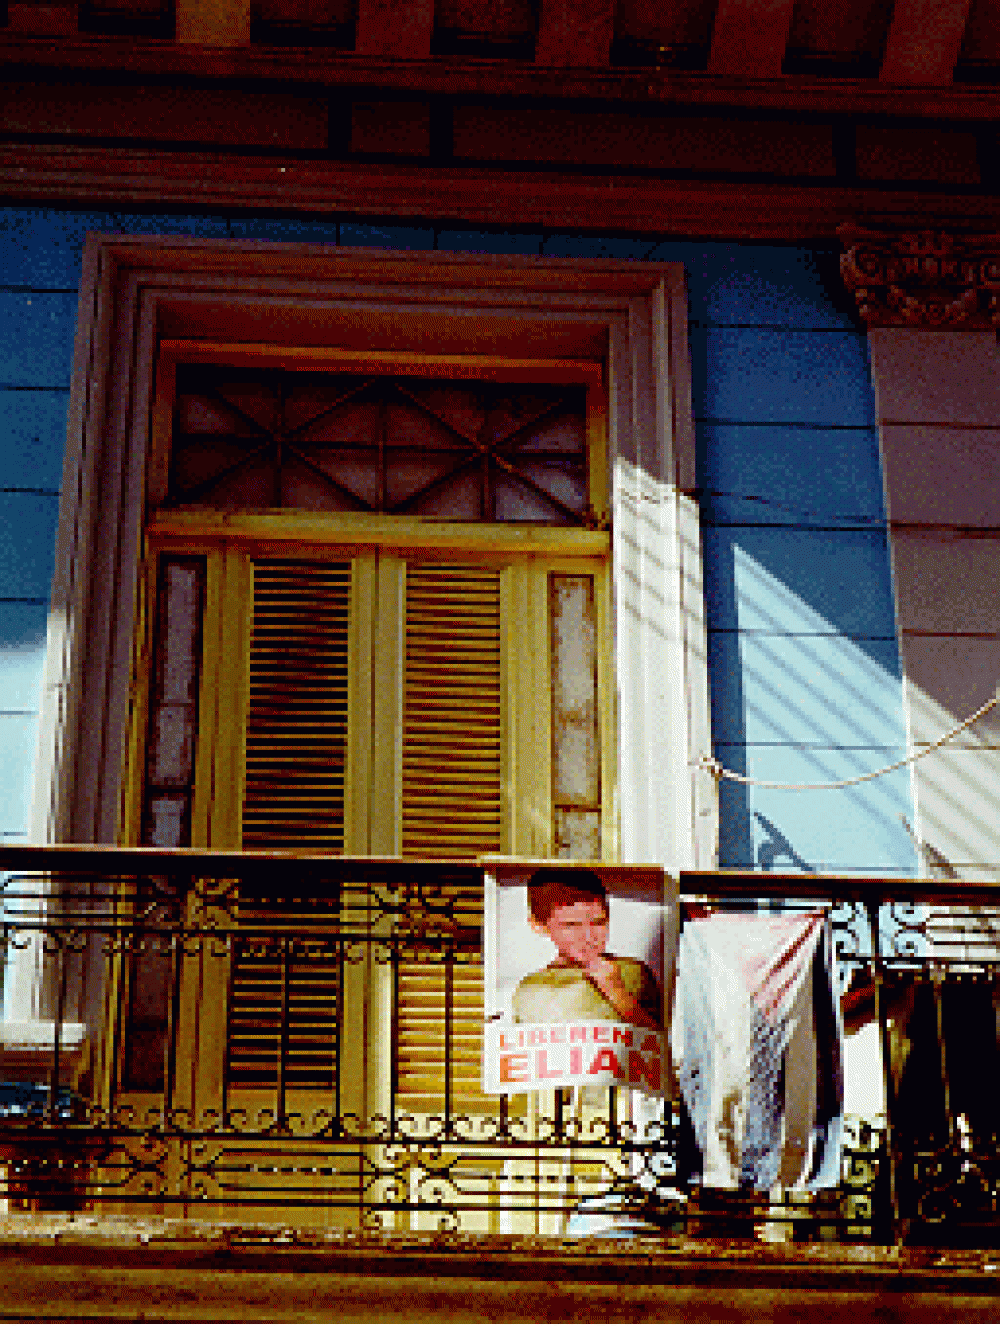 "Free Elian" poster in Havana window, February, 2000. 	